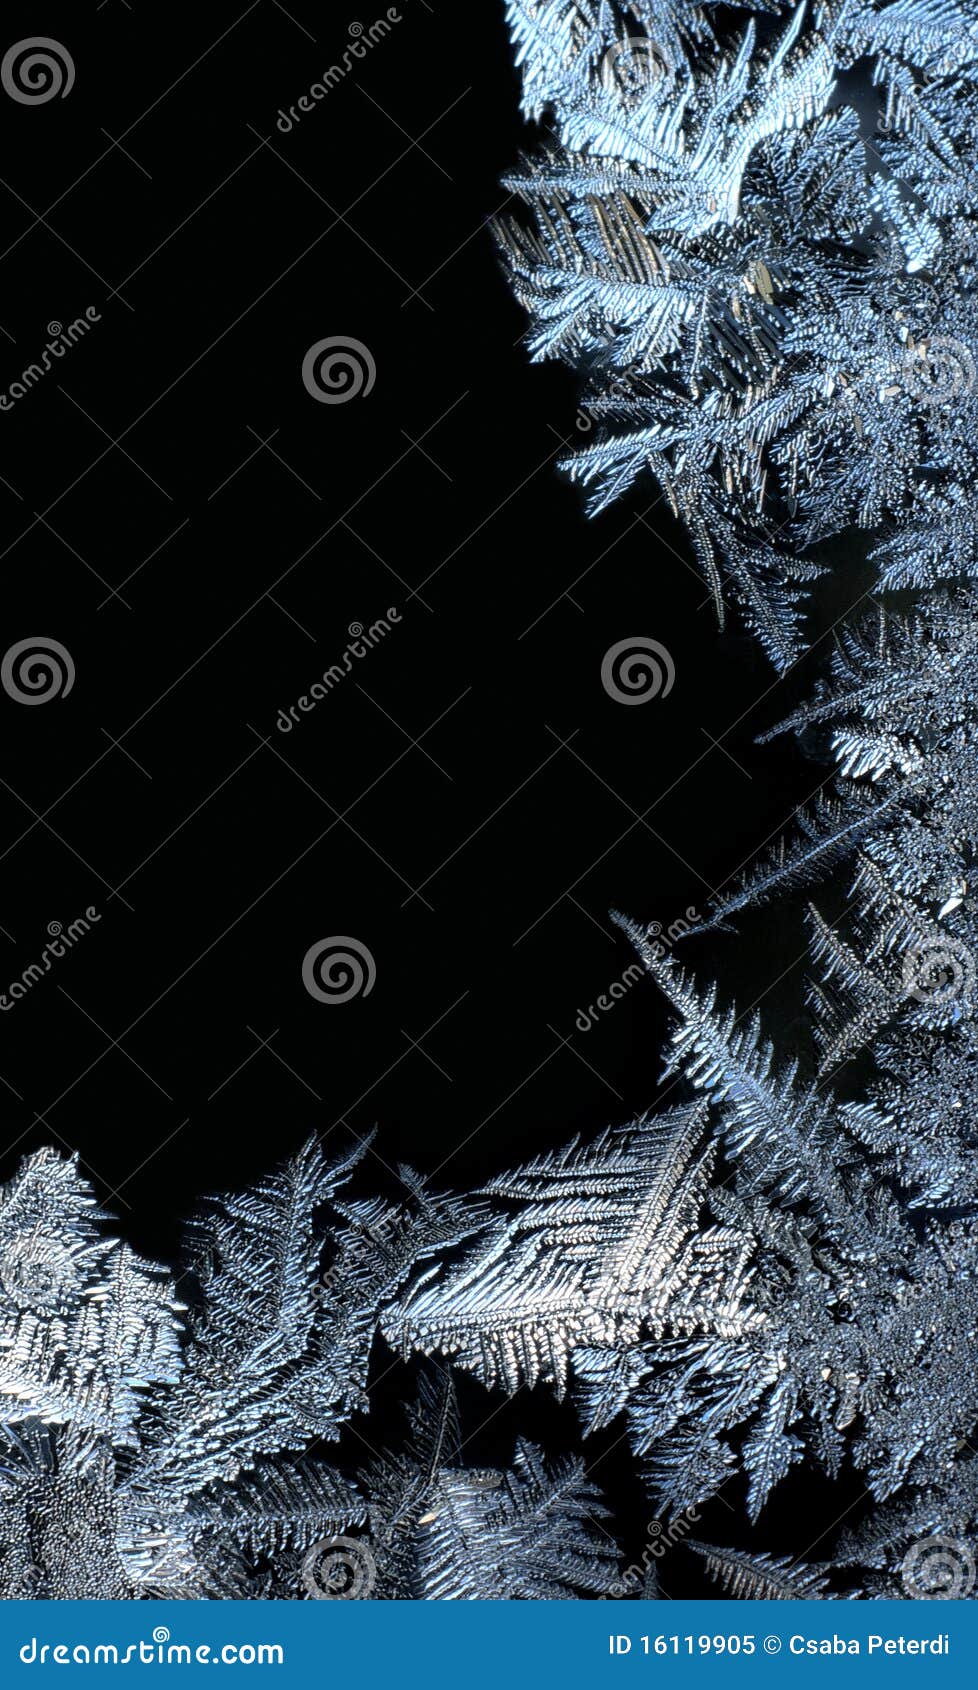 frost frame on black